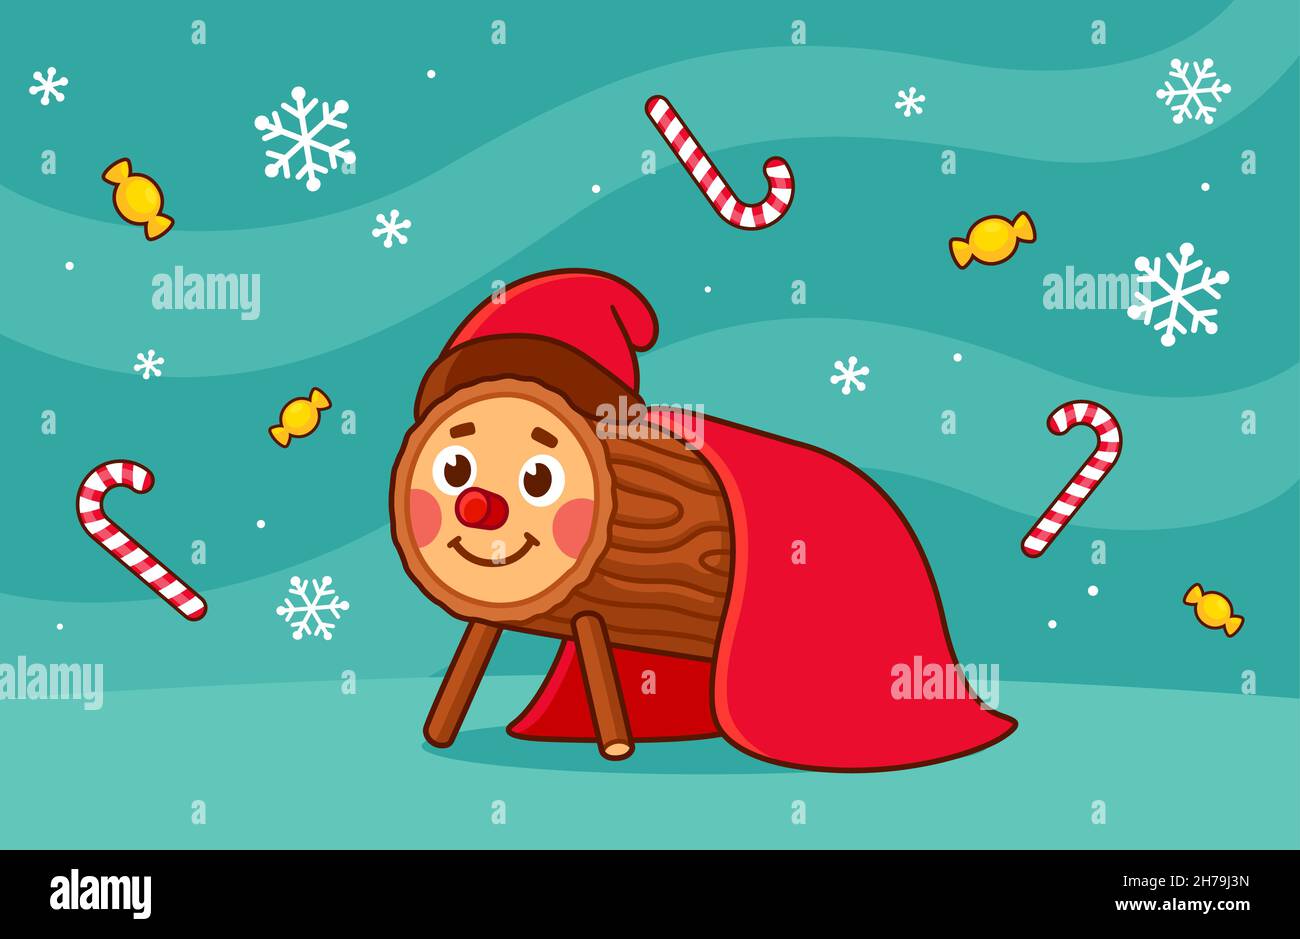 Caga Tio de Nadal, traditionelle Weihnachtsfigur aus Katalonien und Aragon, Spanien. Cute Cartoon Vektor-Illustration auf Winter-Hintergrund mit Süßigkeiten. Stock Vektor